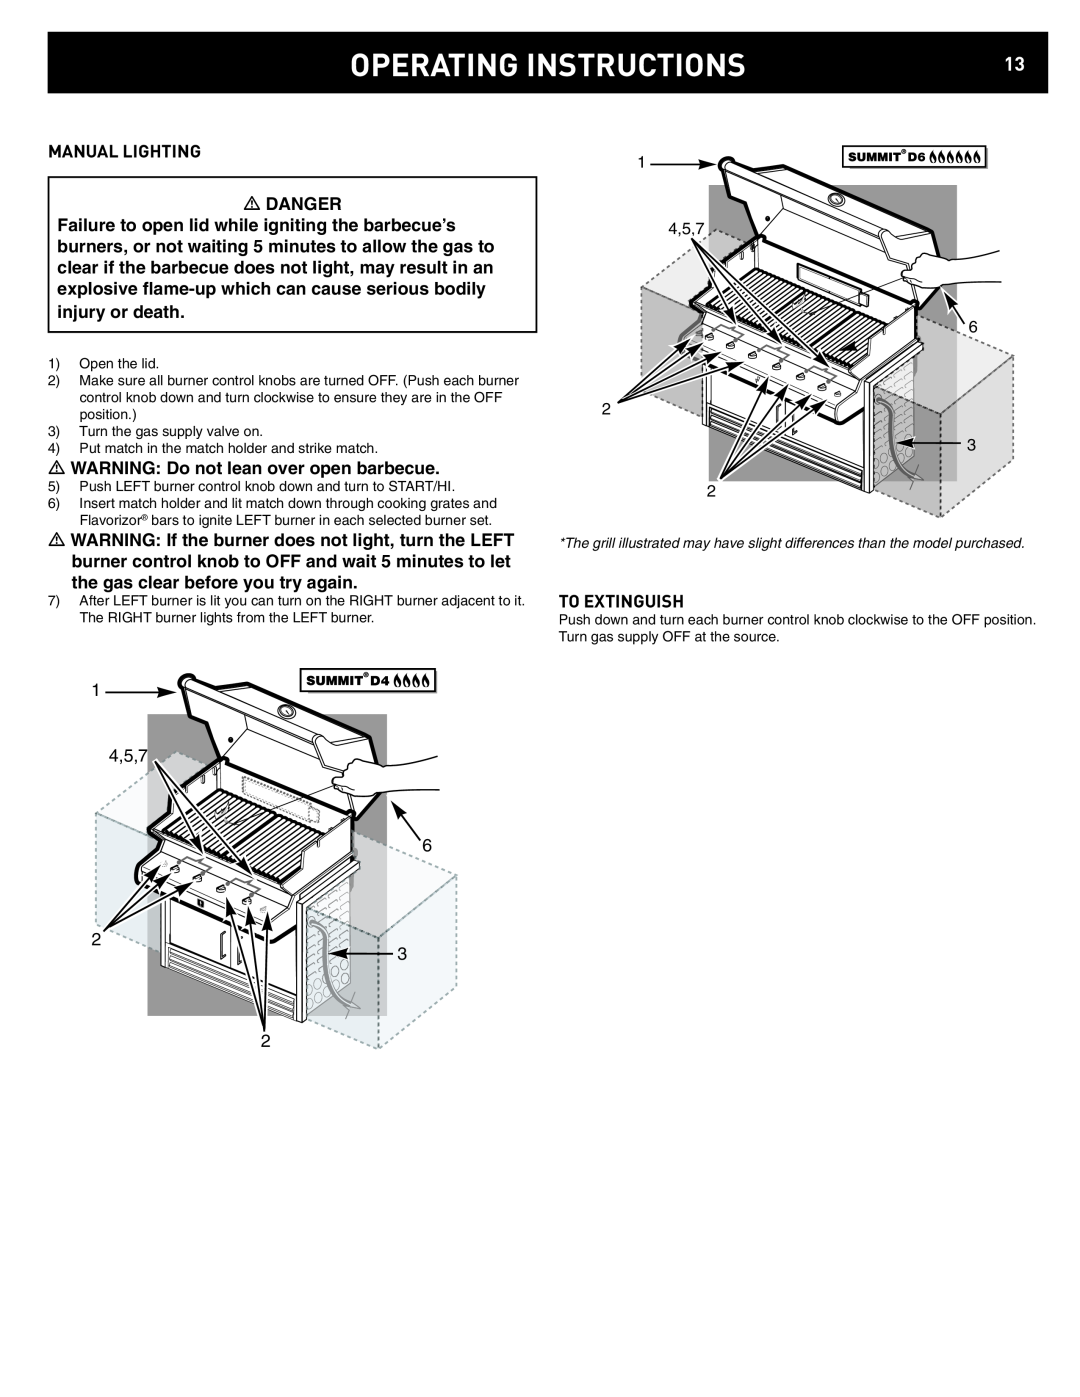 Weber D4, D6 manual Operating Instructions, 4,5,7 